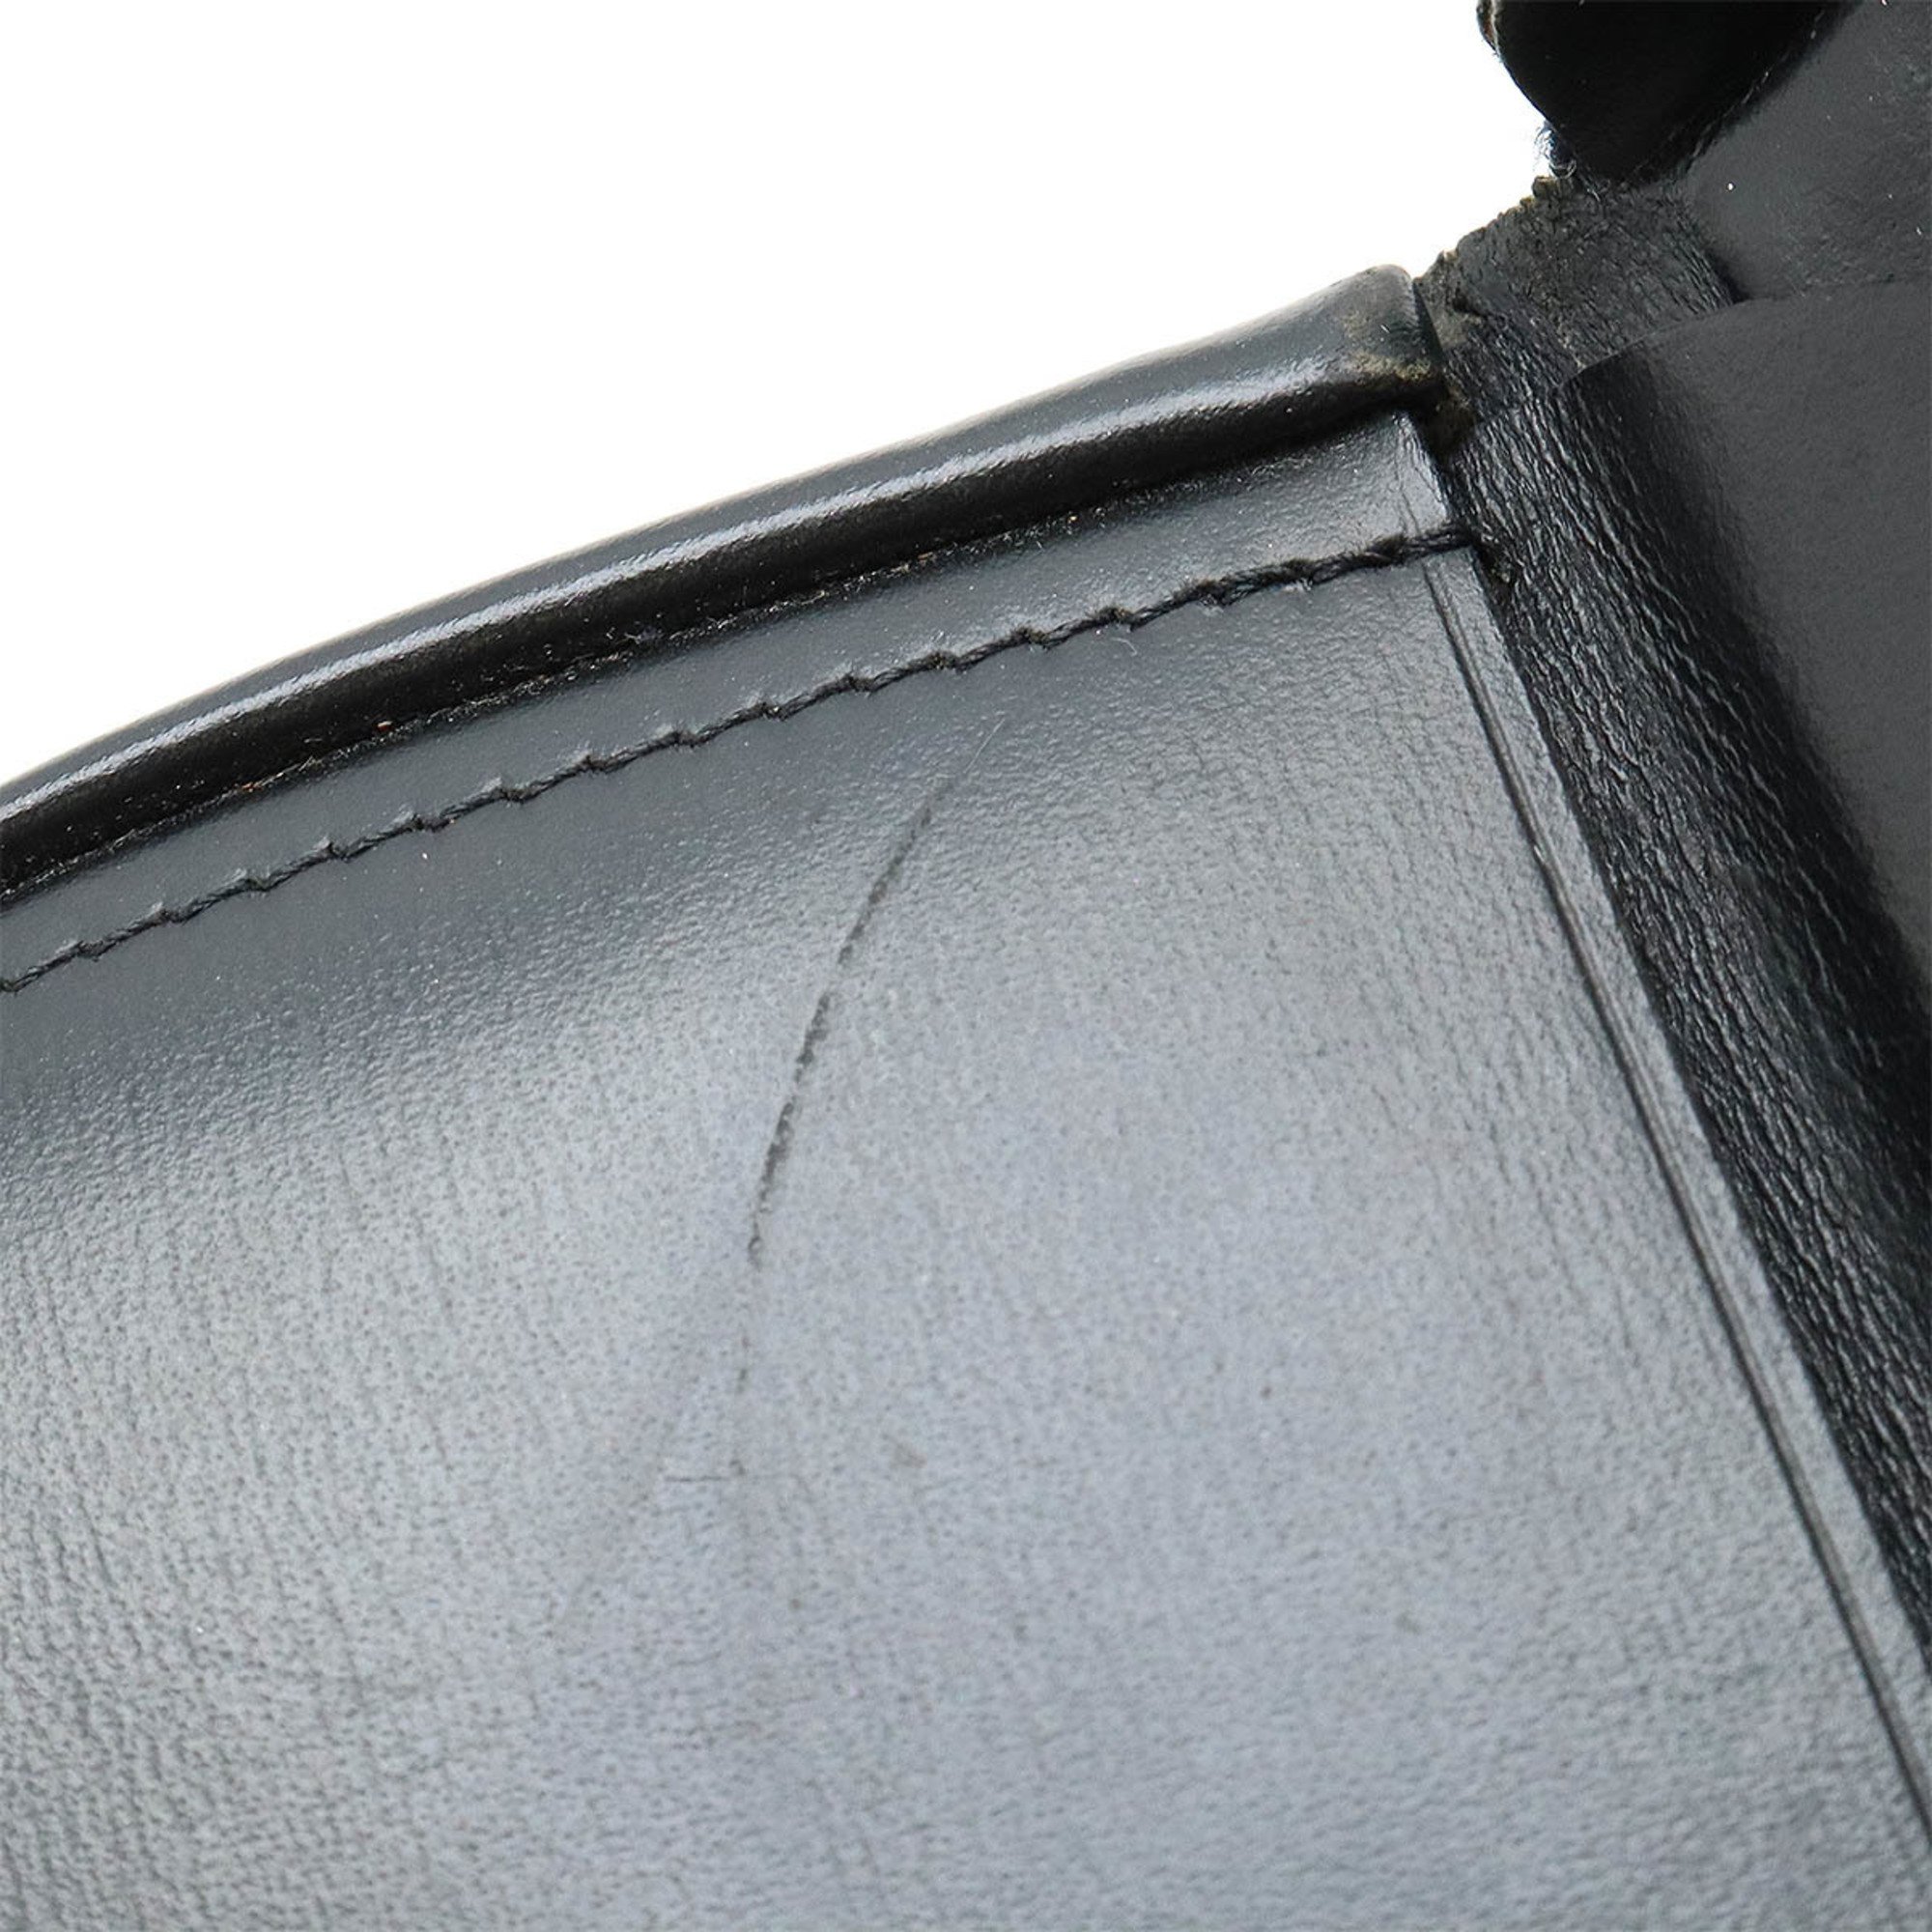 Cartier Pasha de coin case purse leather black L3000129